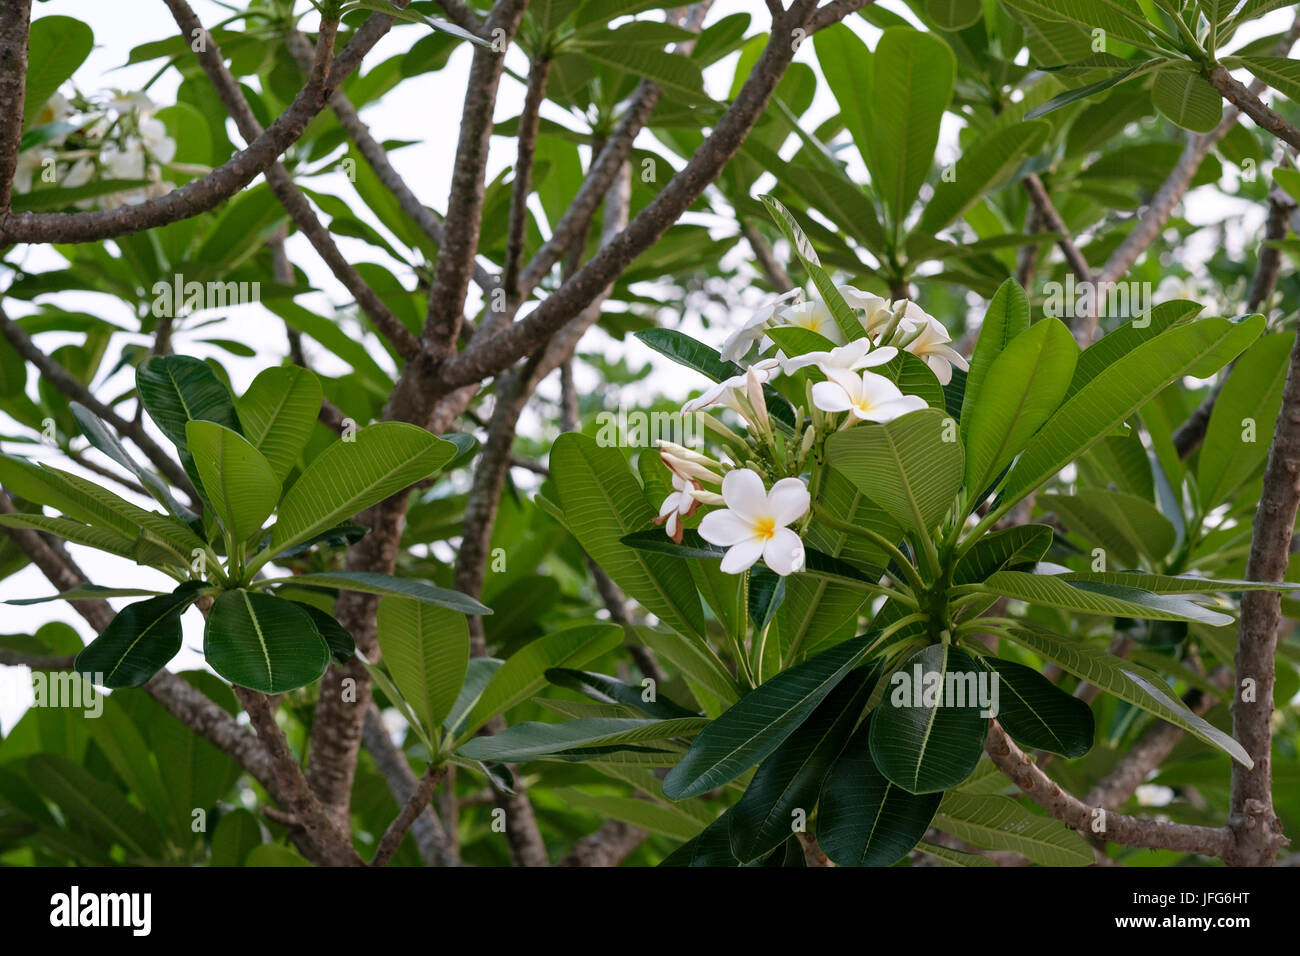 White plumeria flowers on a tree in Laos, Asia Stock Photo